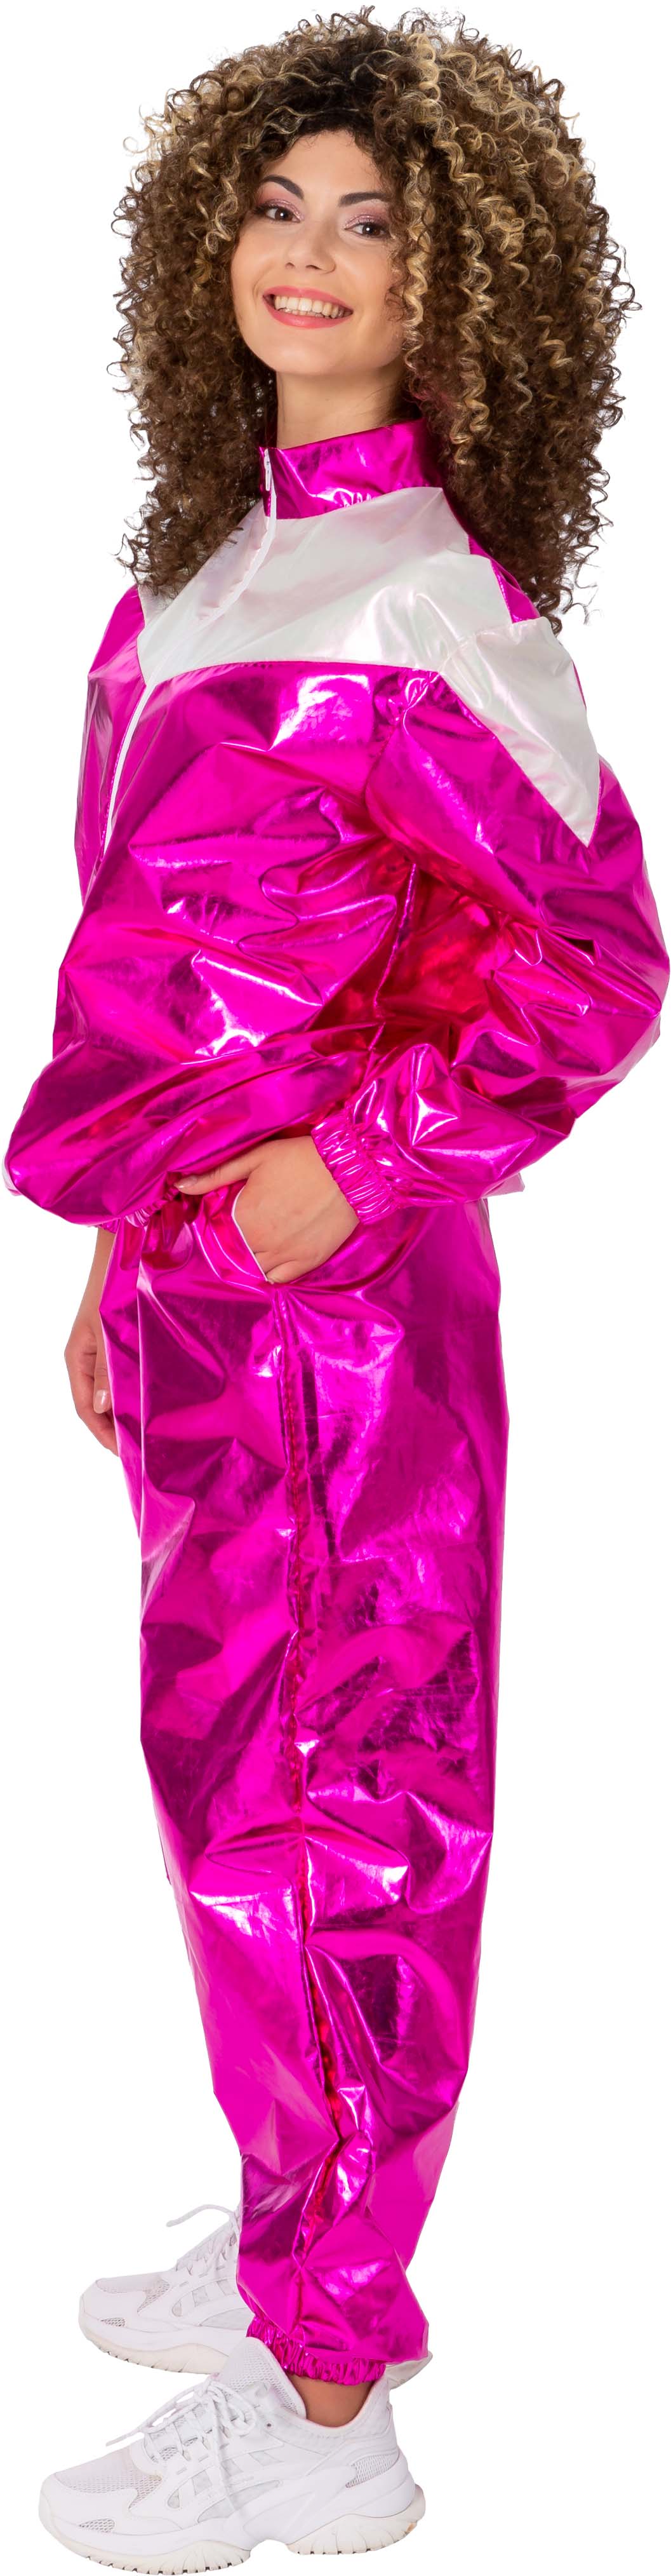 Jogging suit vinyl, pink